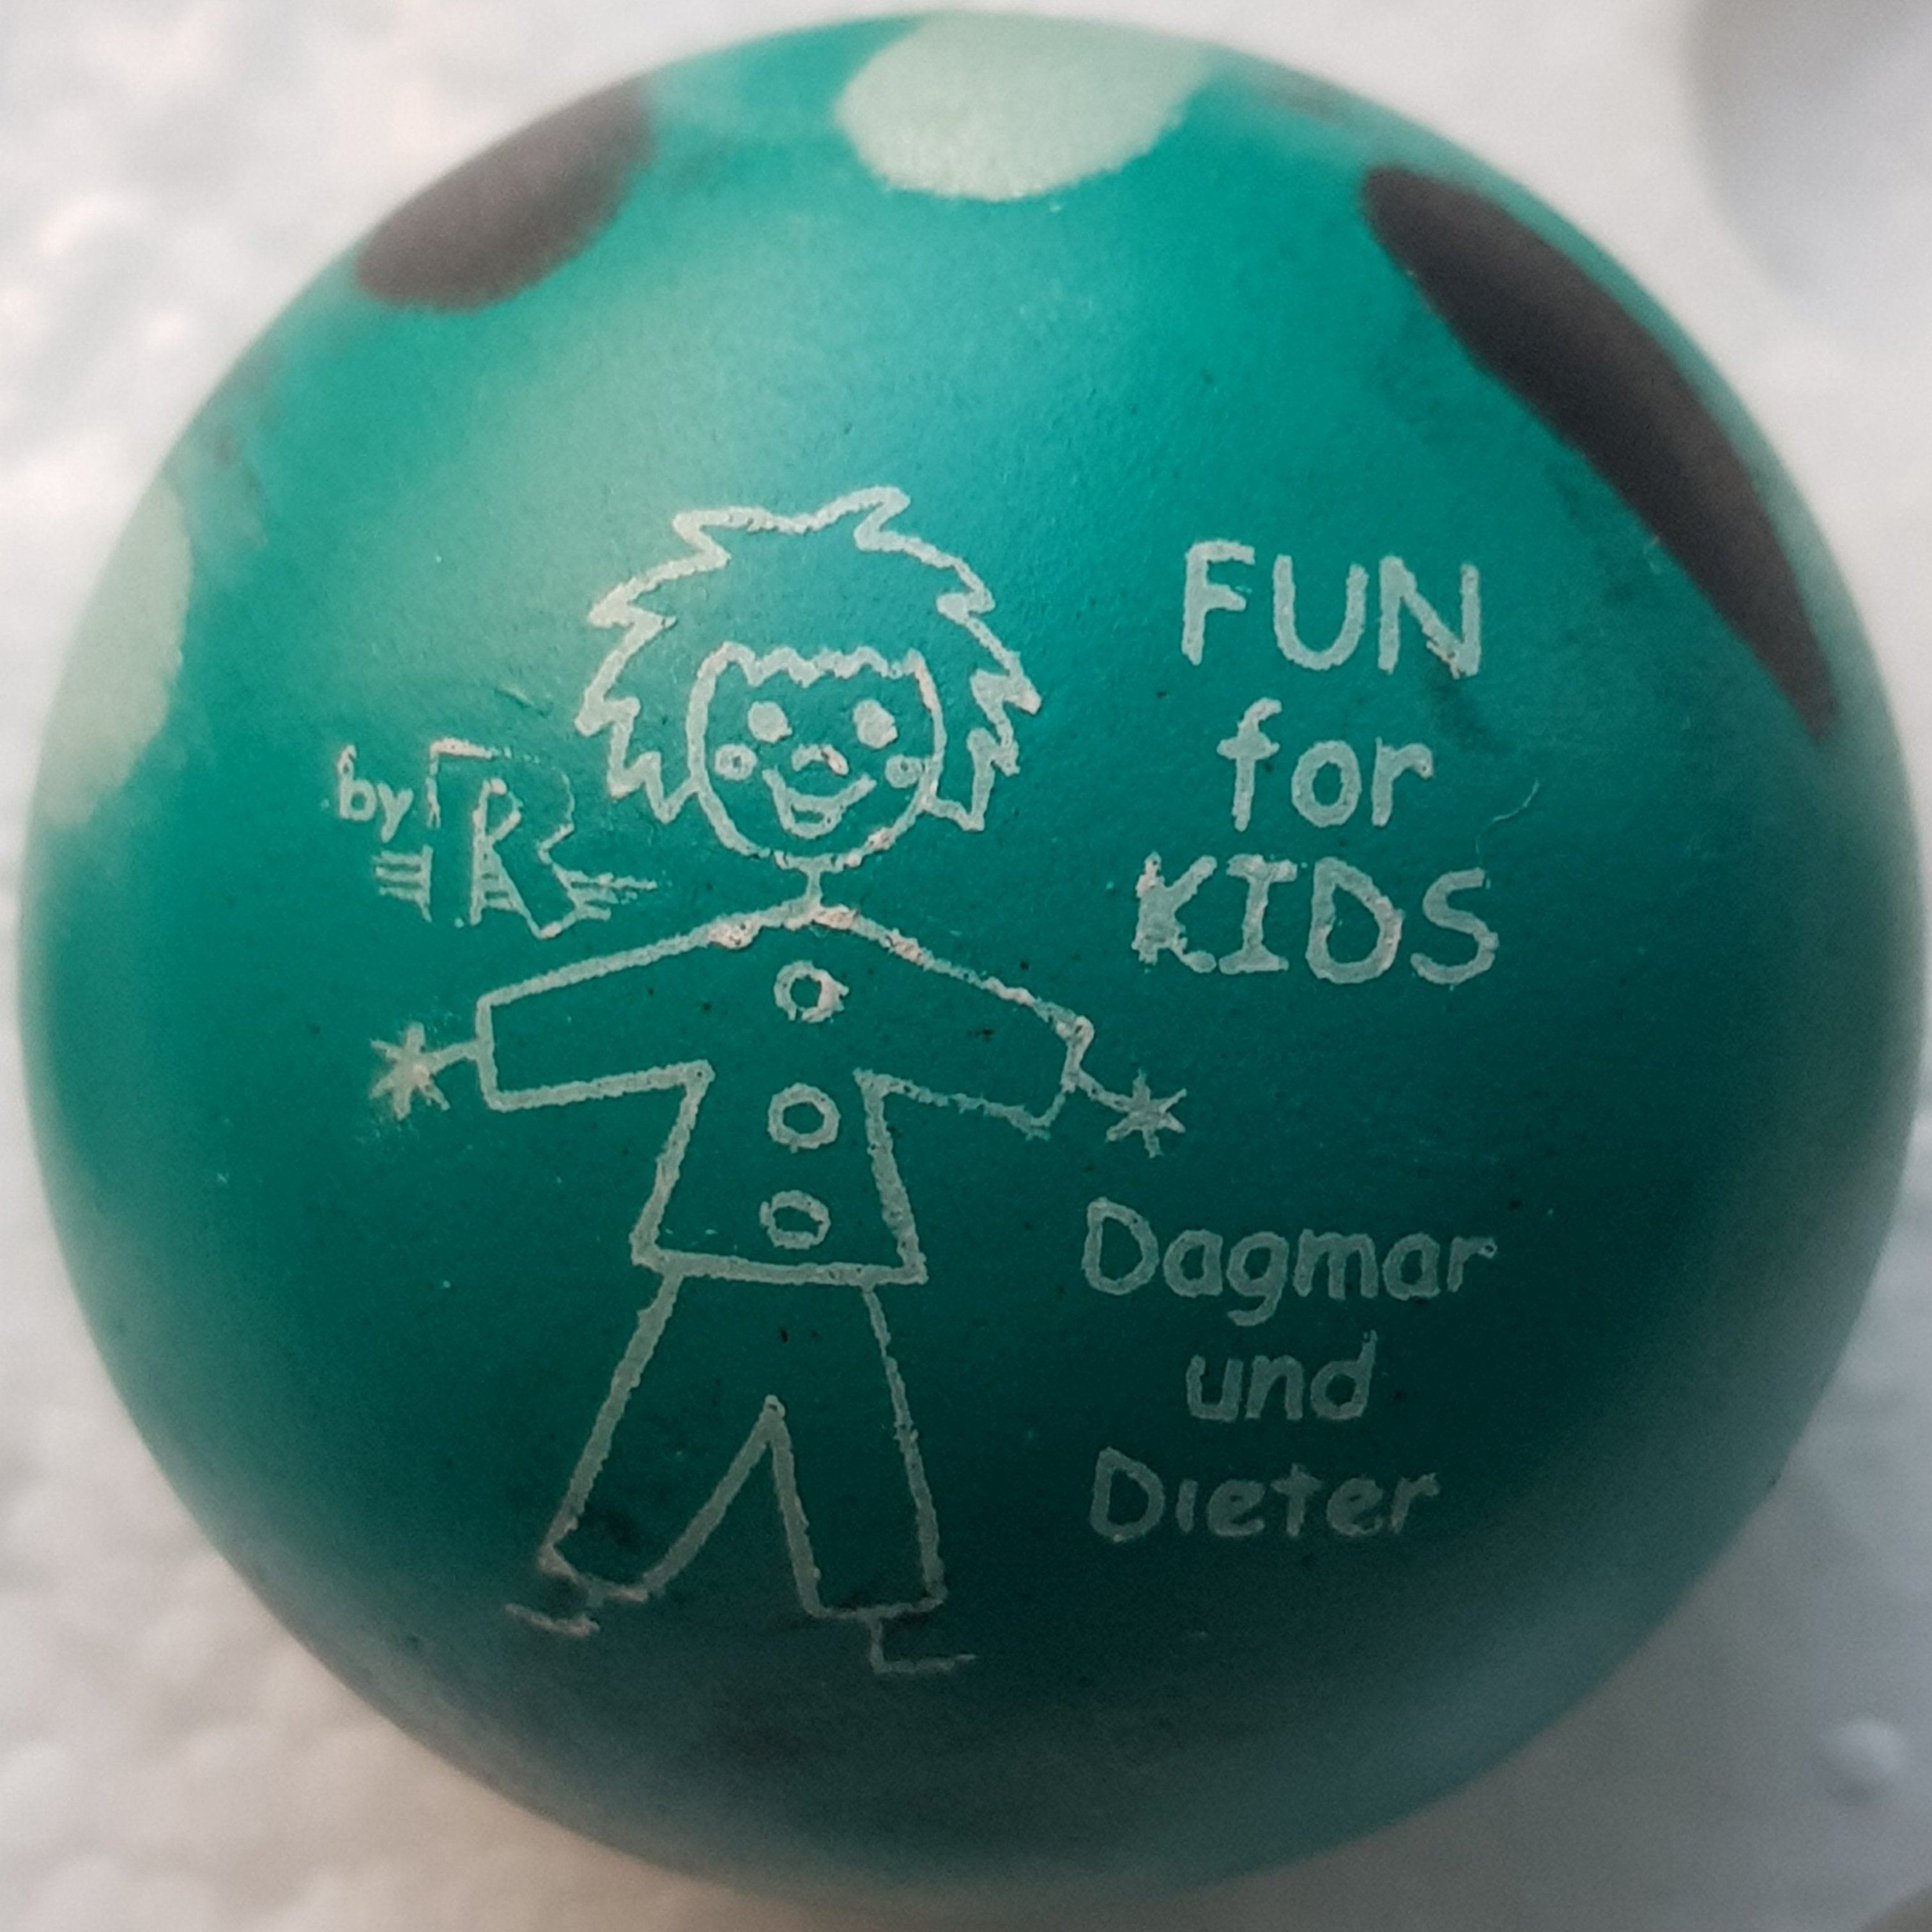 fun_for_kids_dagmar_und_dieter.jpg